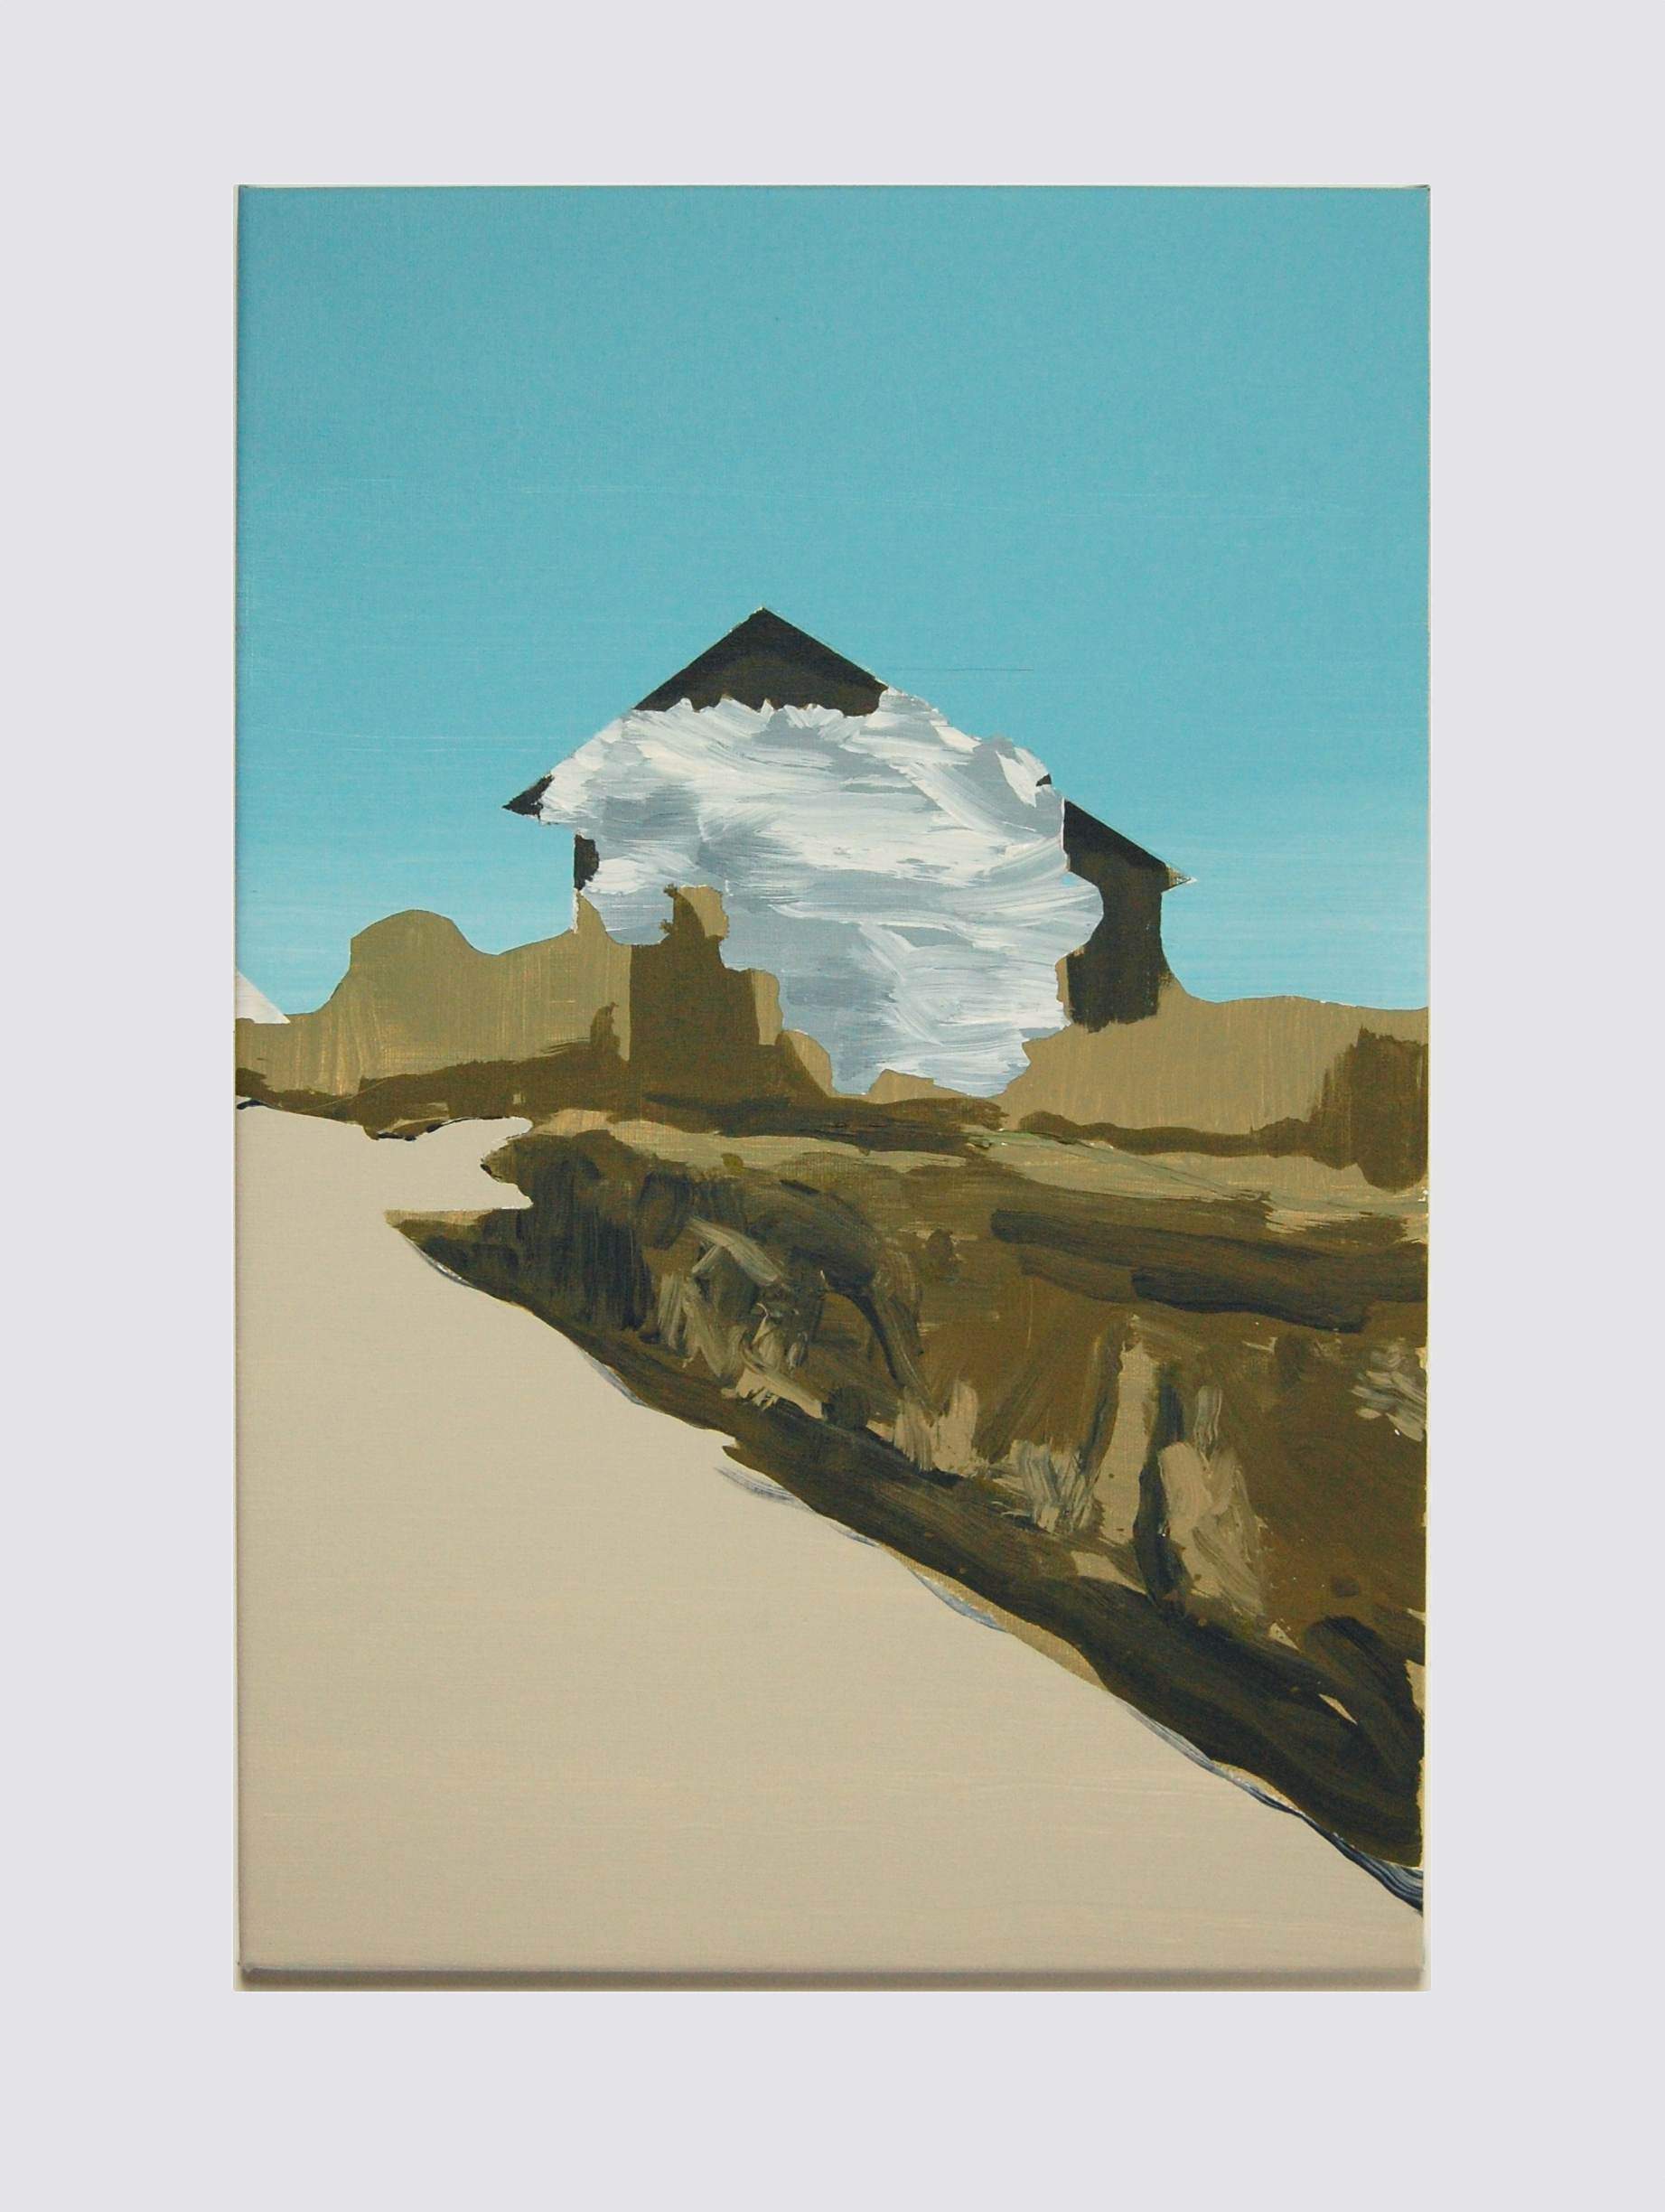 'blossomhouse', 44 x 66 cm, acrylics on canvas, 2020